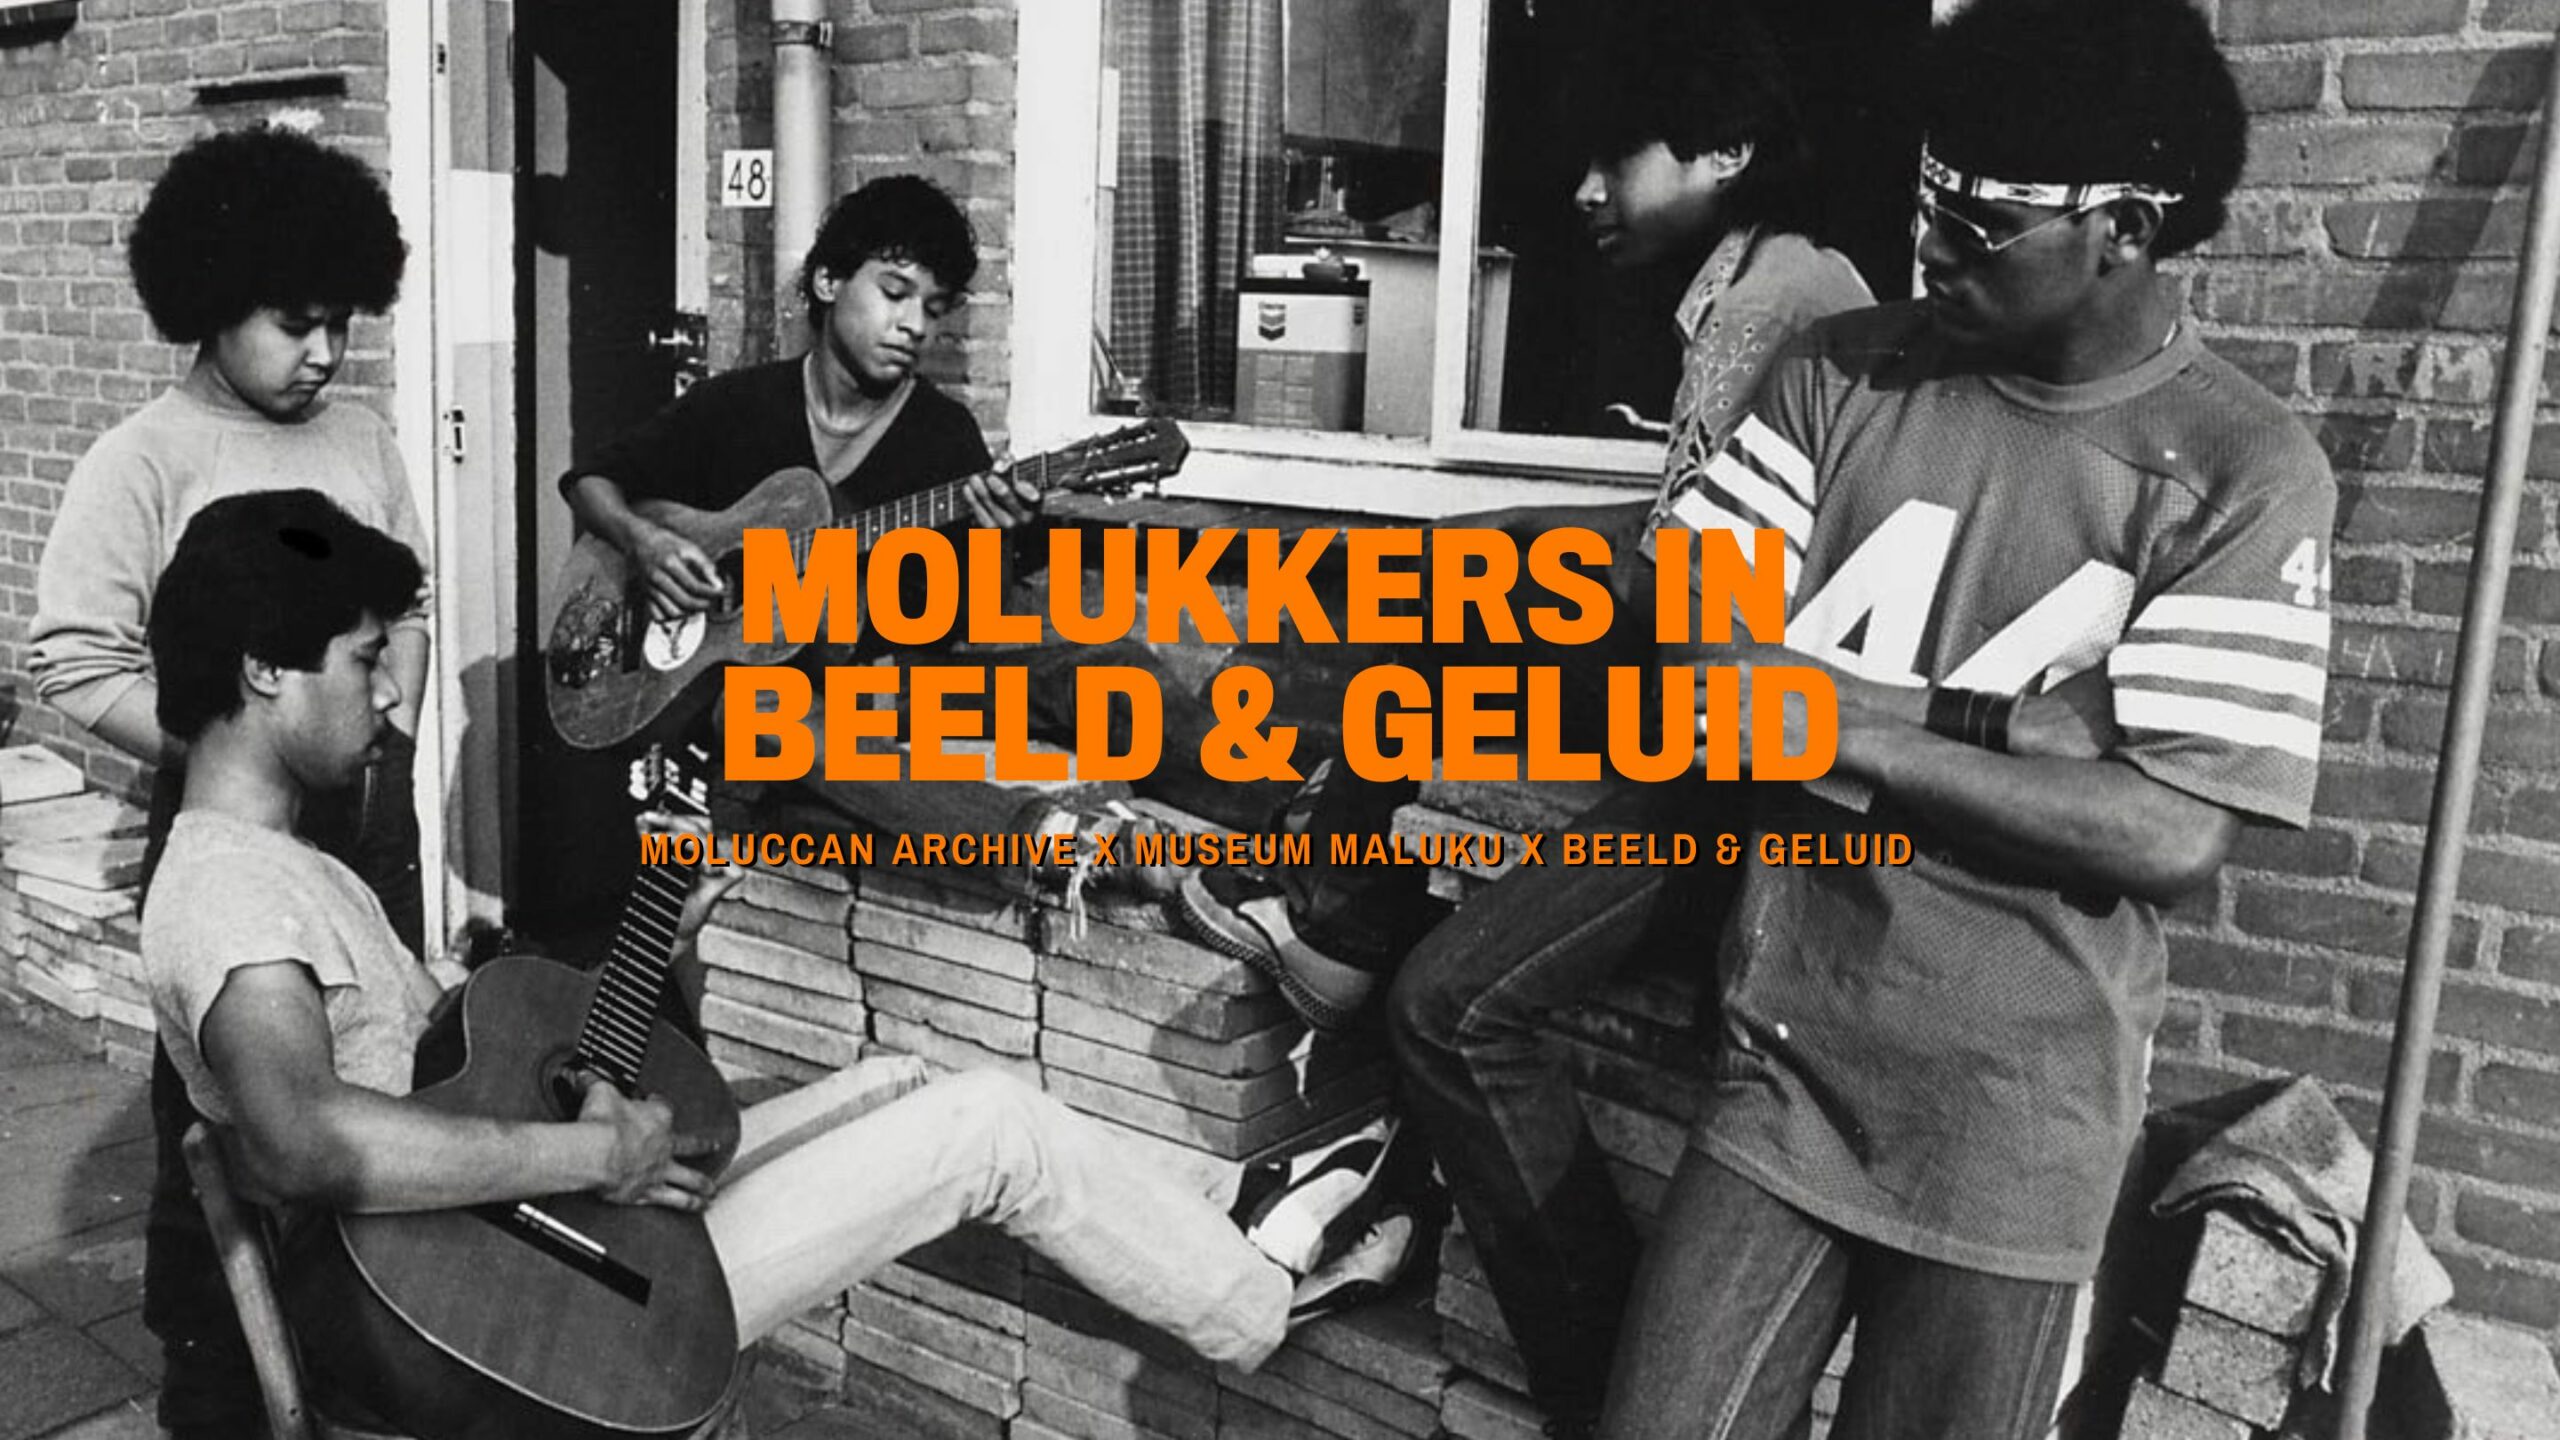 Molukkers in beeld & geluid, Museum Maluku, Beeld & Geluid Den Haag, Moluccan Archive, Den Haag